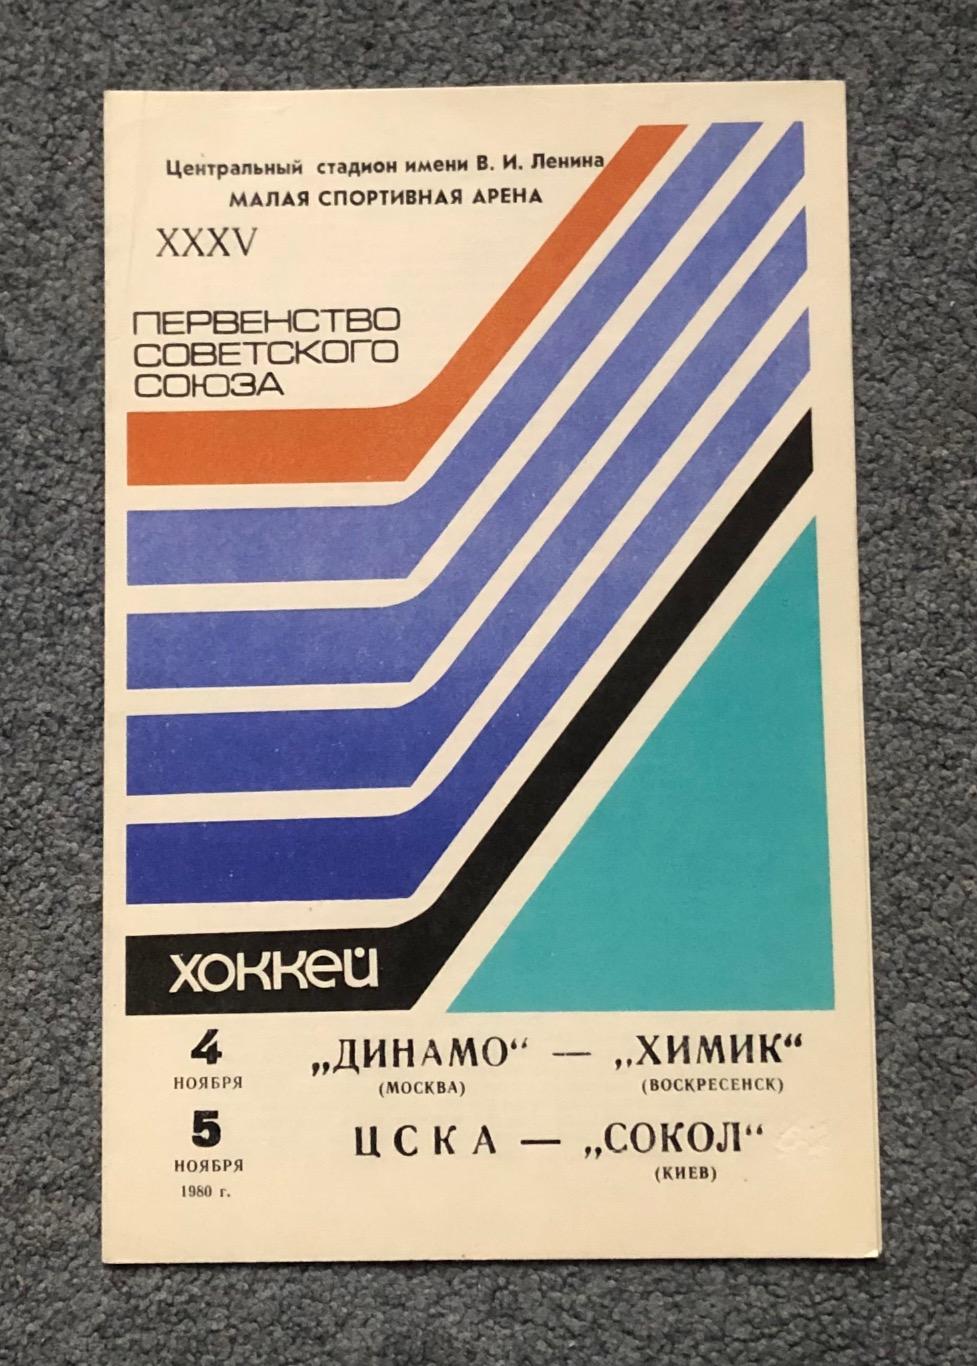 Динамо Москва - Химик Воскресенск, ЦСКА - Сокол Киев, 04 и 05.11.1980